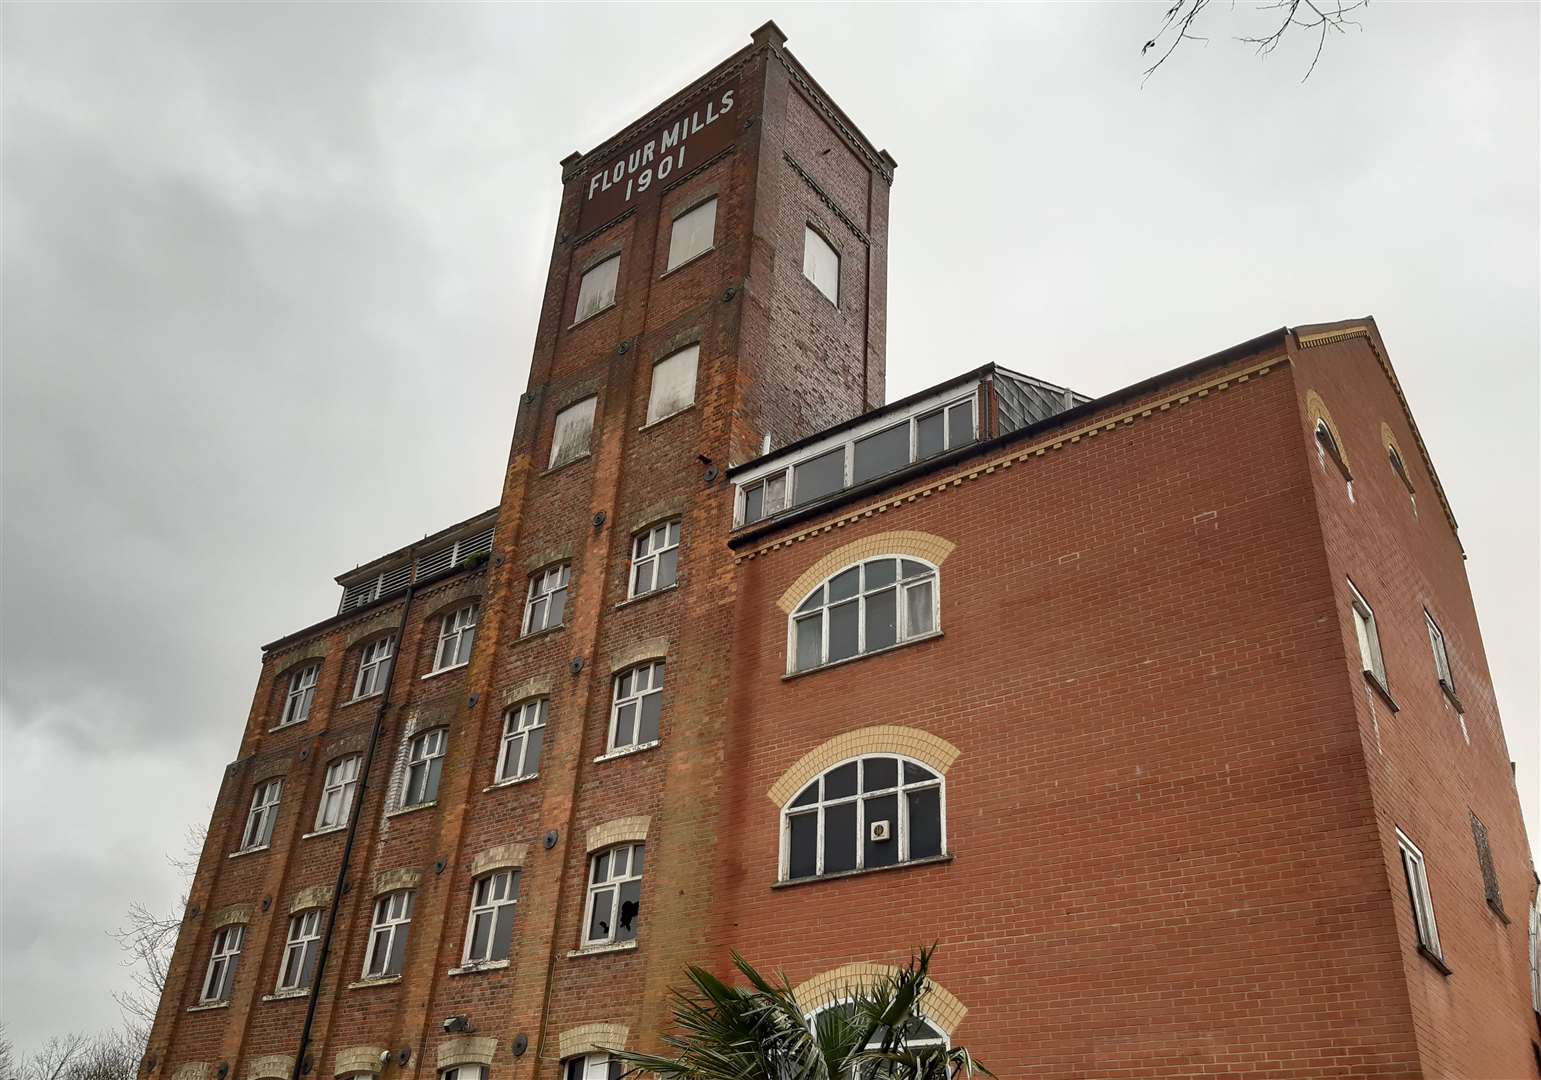 The former Ashford flour mill was previously a popular nightclub